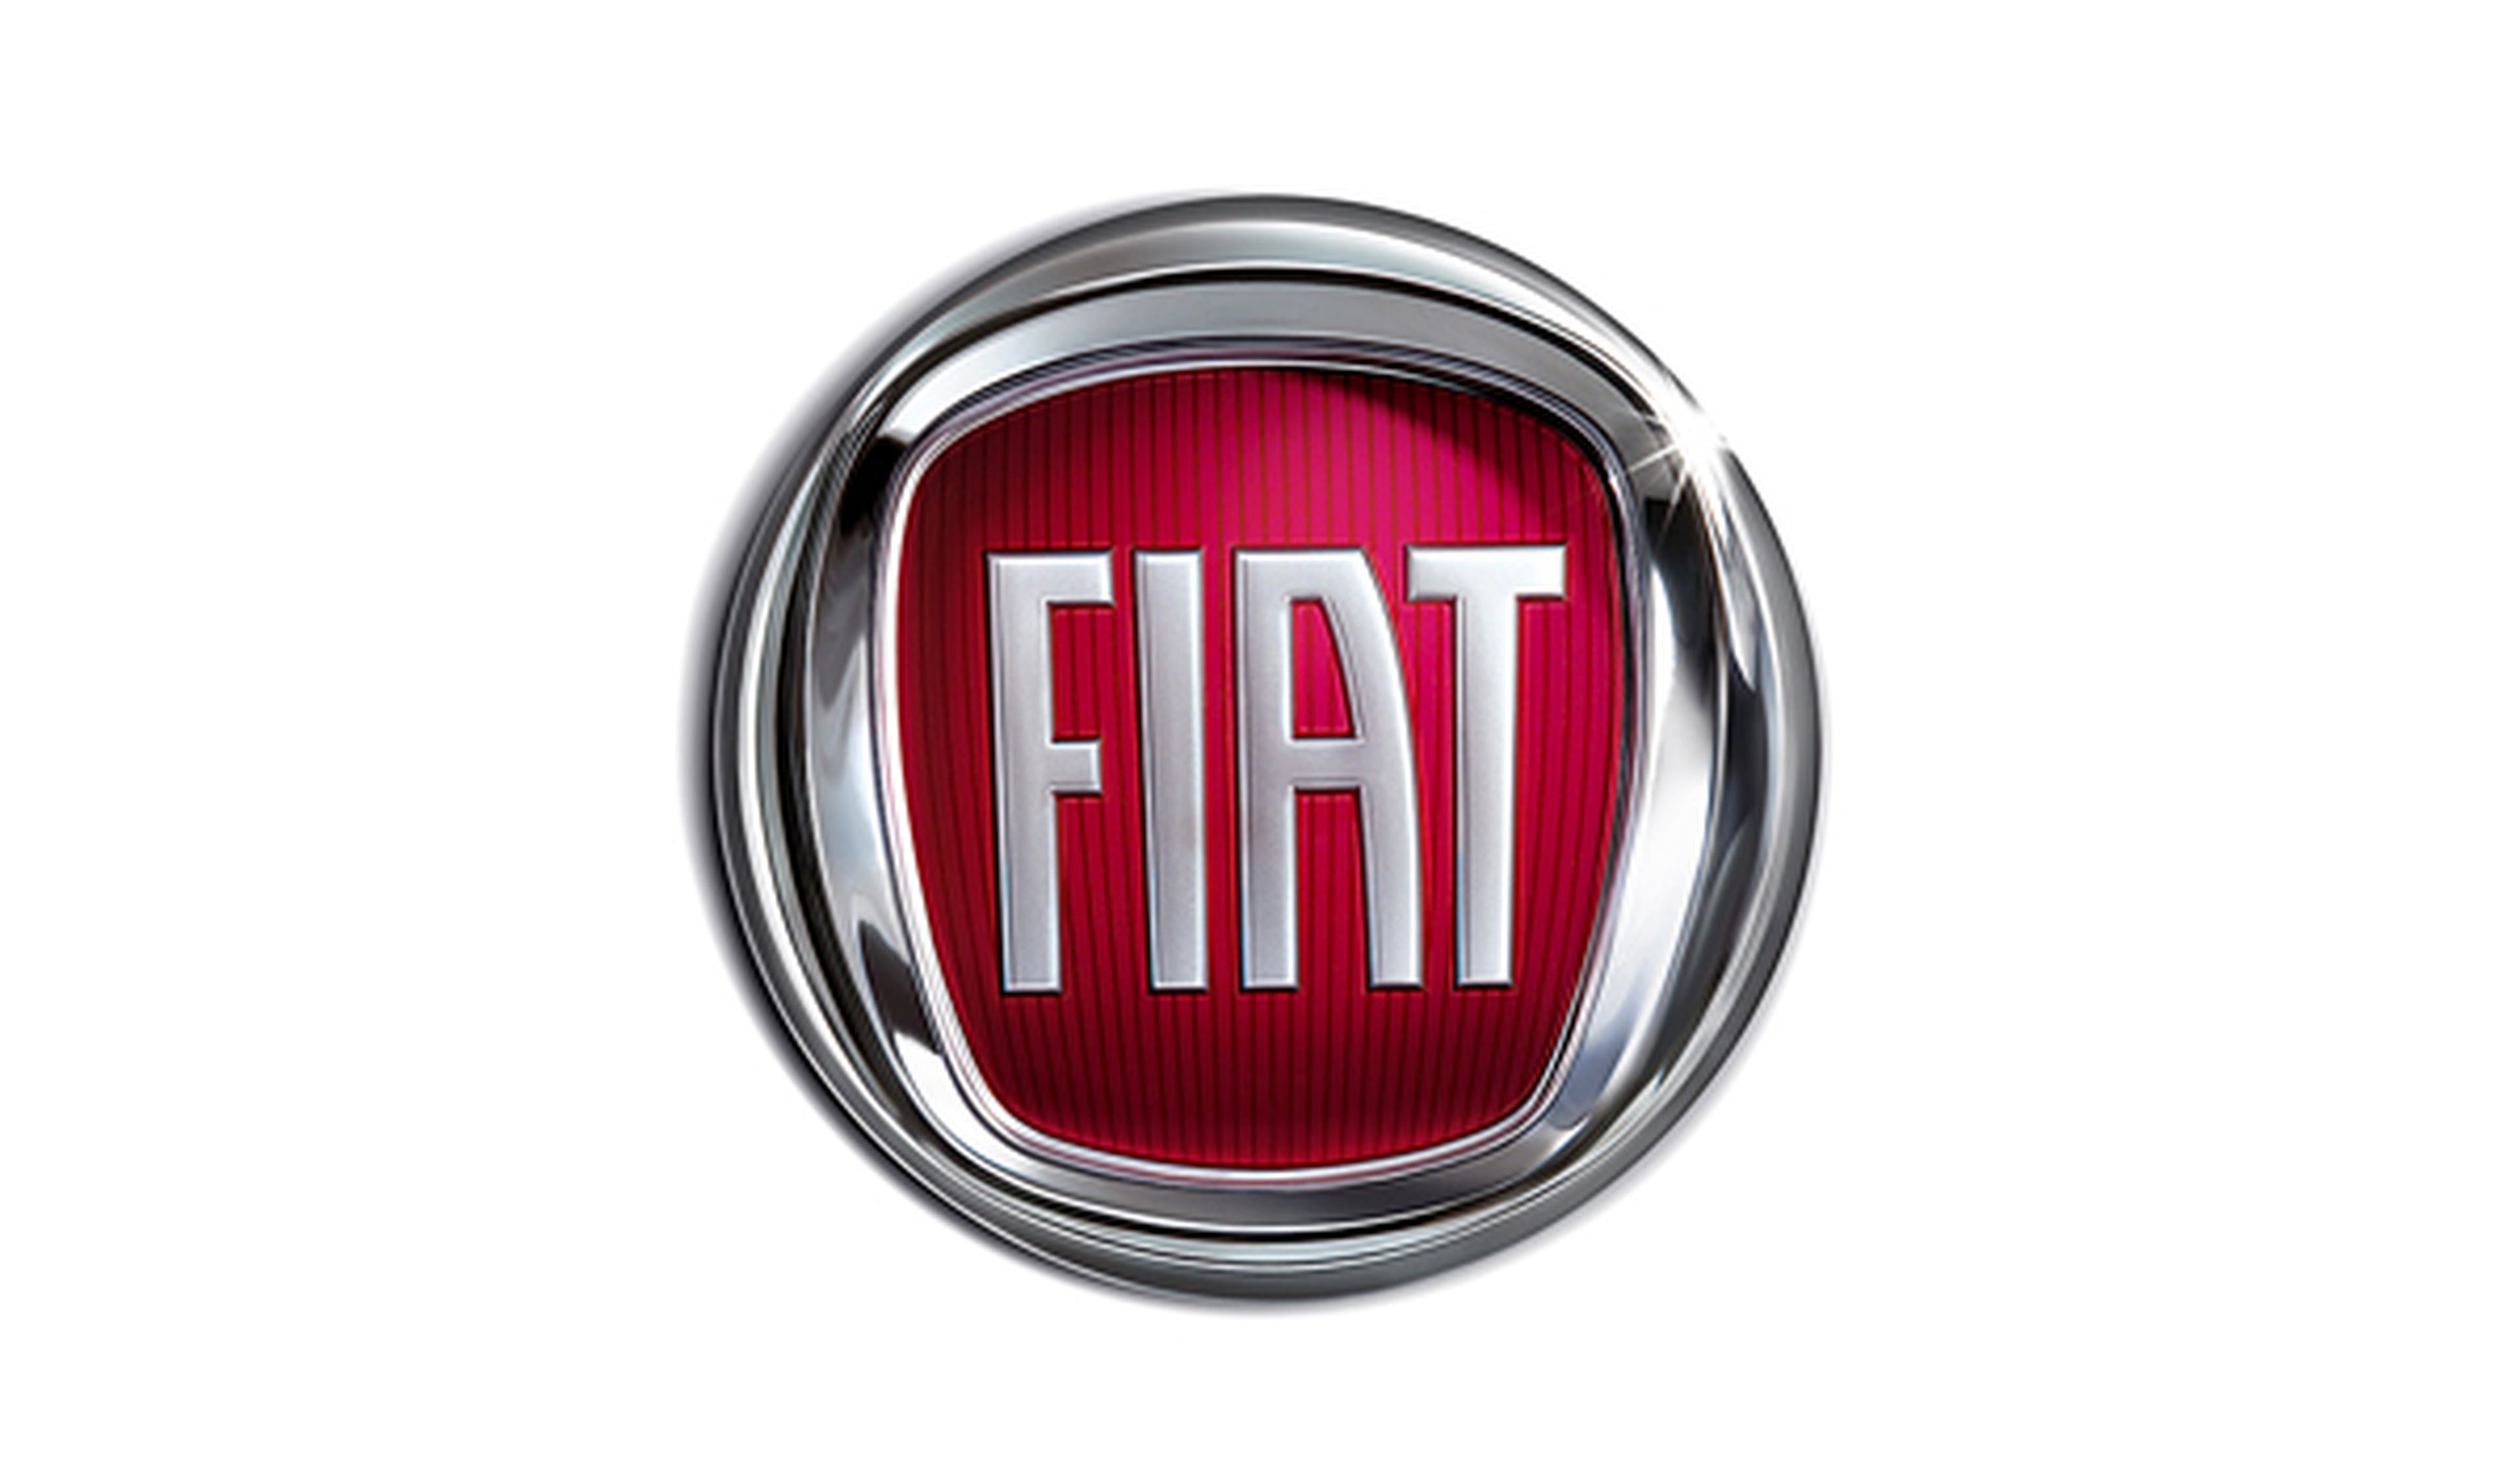 El Grupo Fiat ofrece revisiones gratis a todos sus coches